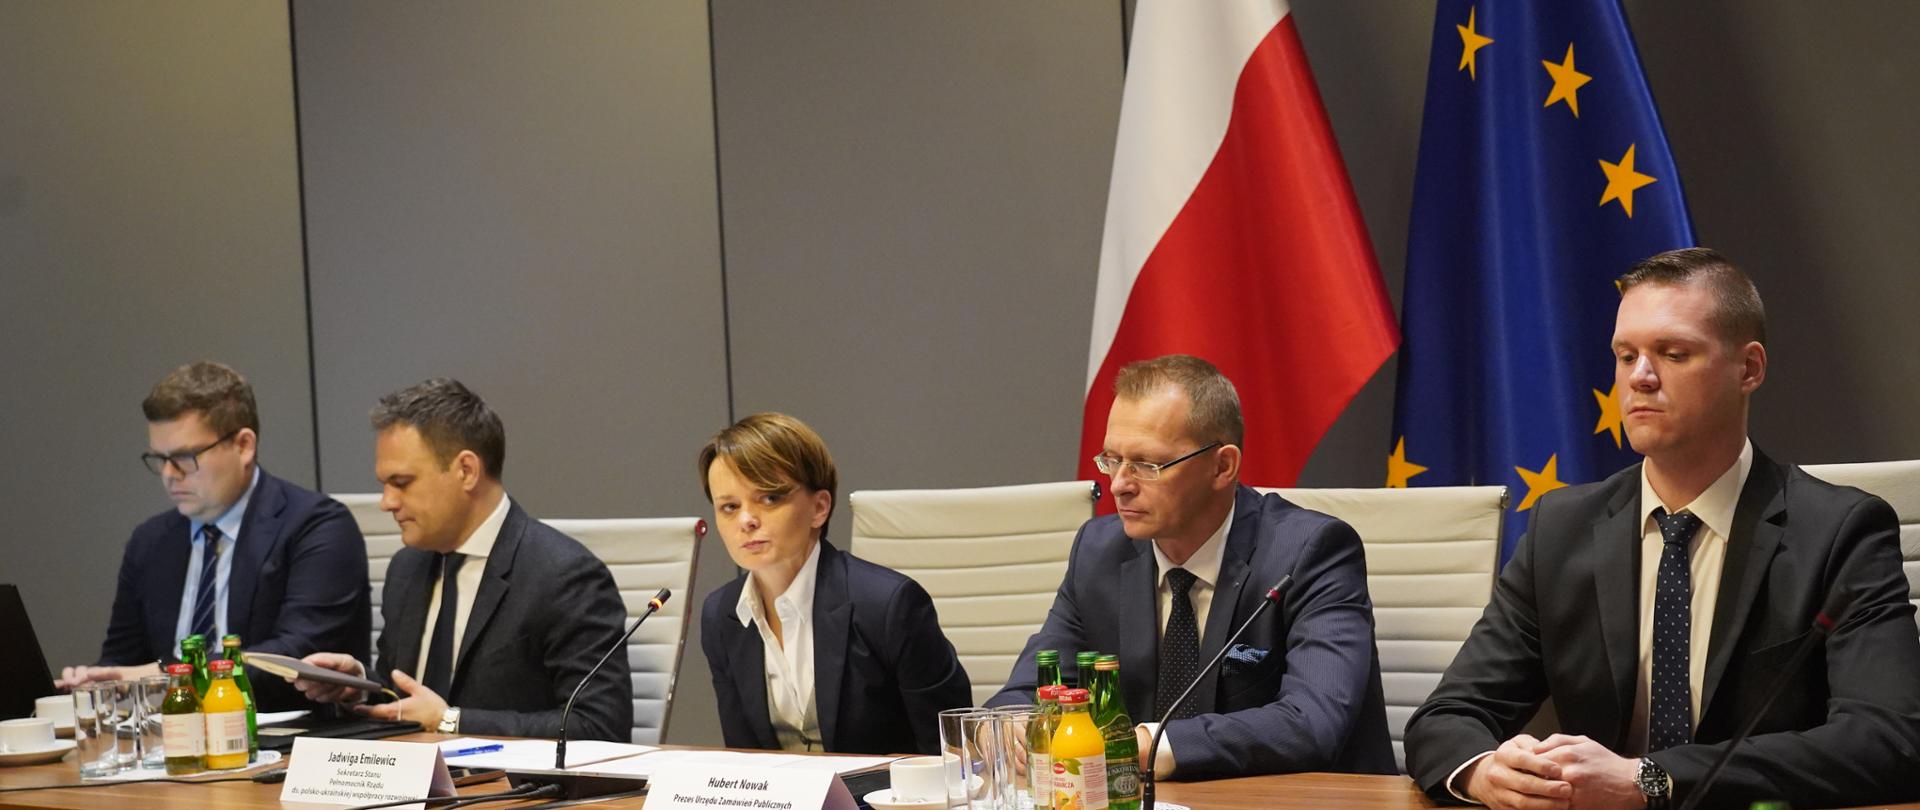 Wiceminister Jadwiga Emilewicz siedzi w środku przy stole.